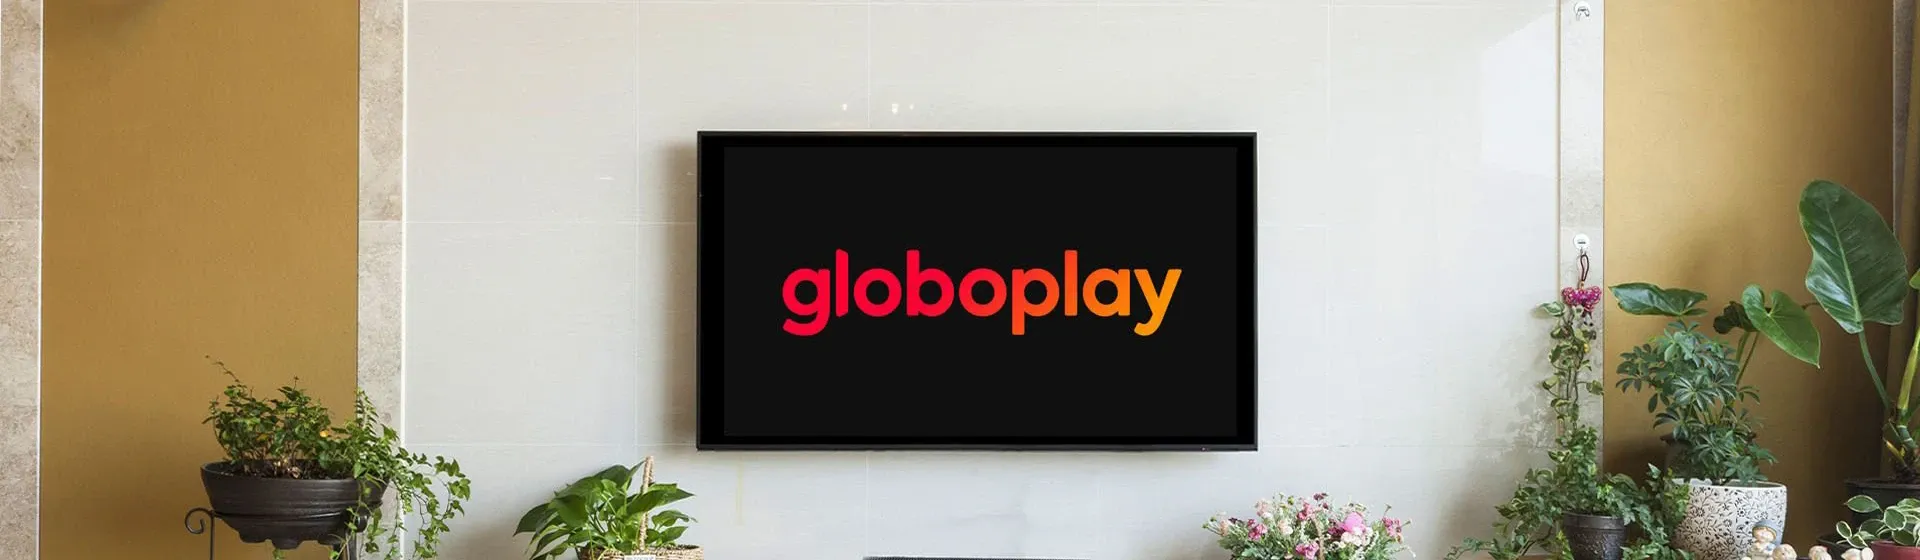 Como assistir a séries e novelas offline no Globoplay pelo celular